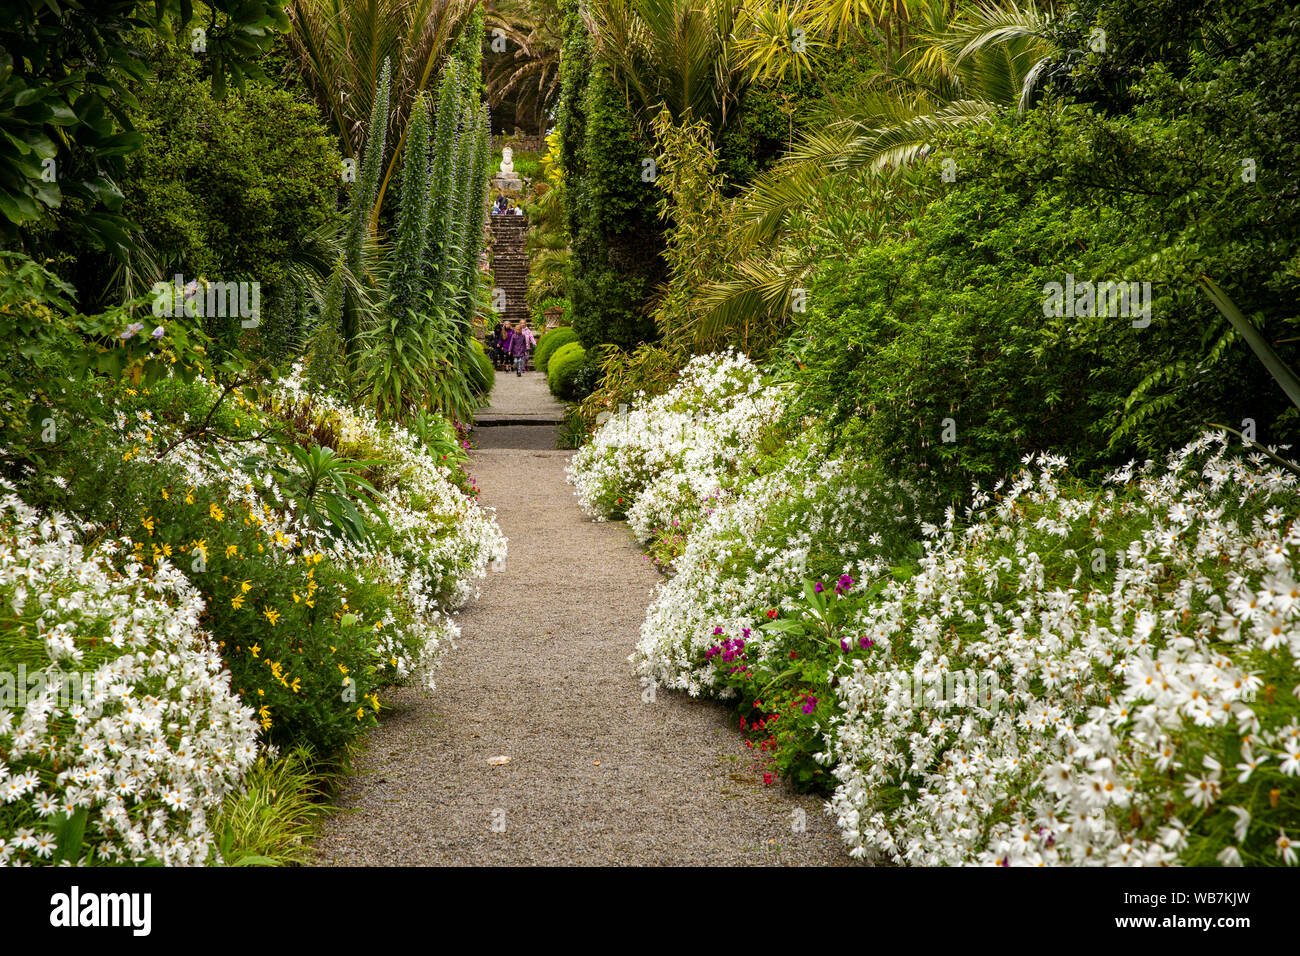 Großbritannien, England, Scilly Inseln, Tresco Abbey Gardens, Leuchtturm, Blumen gesäumte Grenze führt zu Vater Neptune Statue Stockfoto